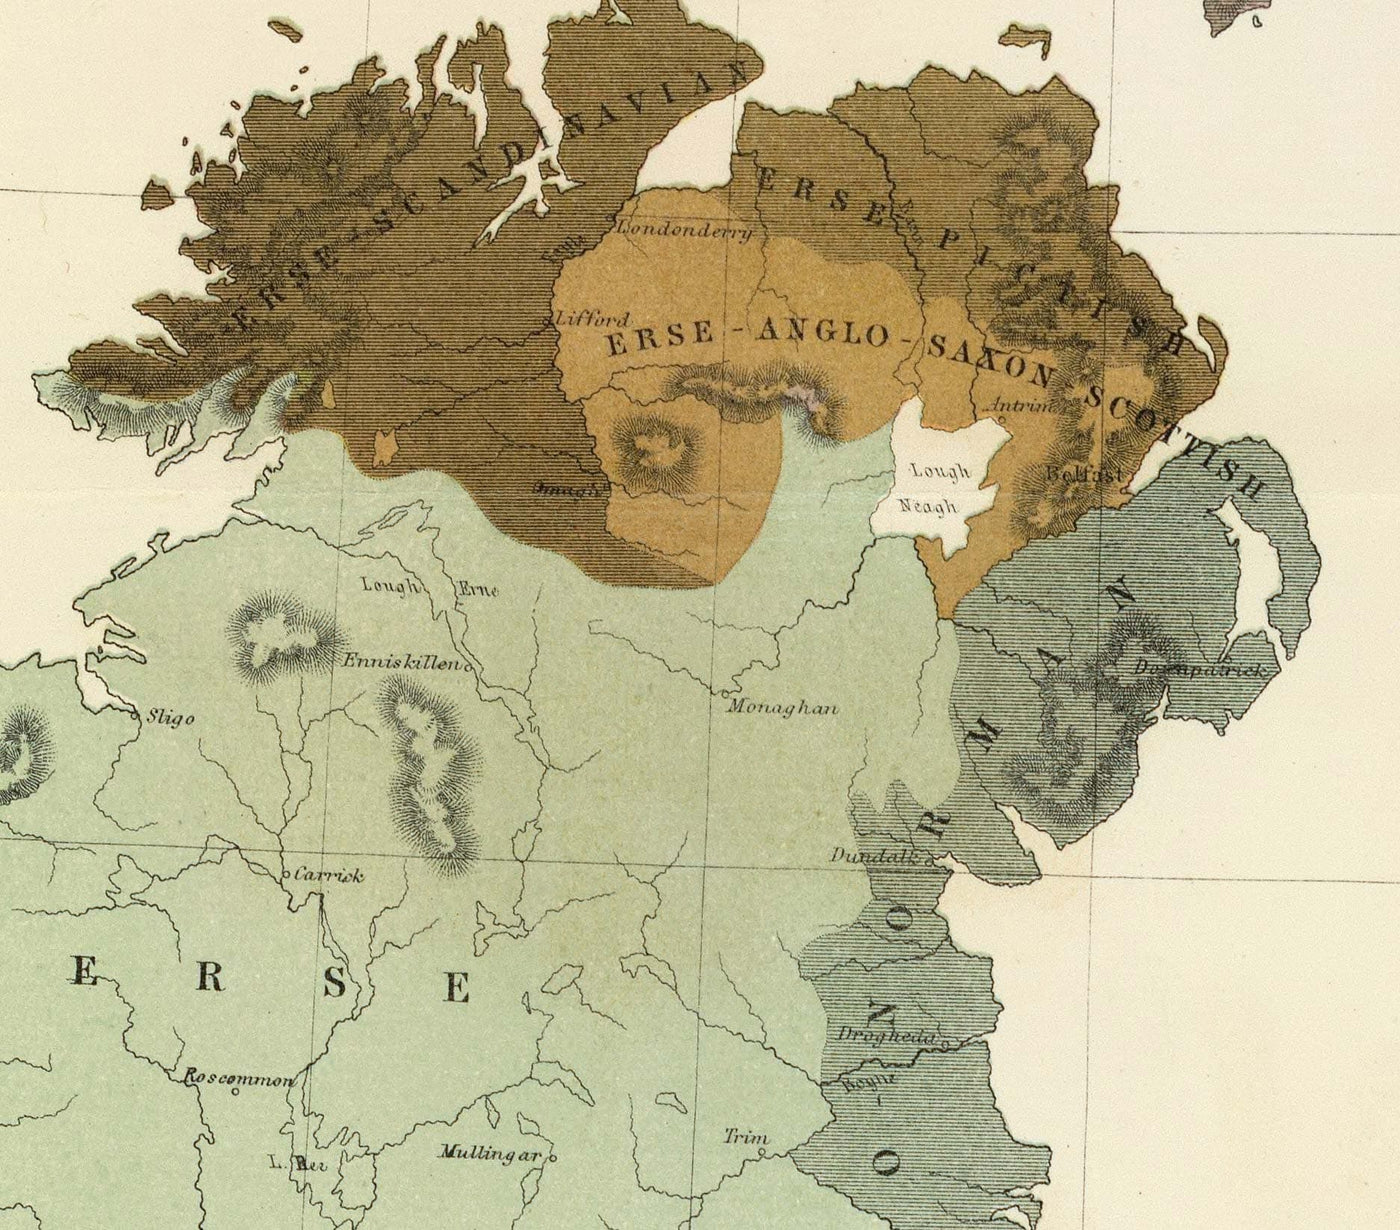 Antiguo mapa de la antigua Gran Bretaña, 1856 - Gales, Erse, Irlanda gaélica, Picts, tribus celtas de la Edad de Hierro, Silures